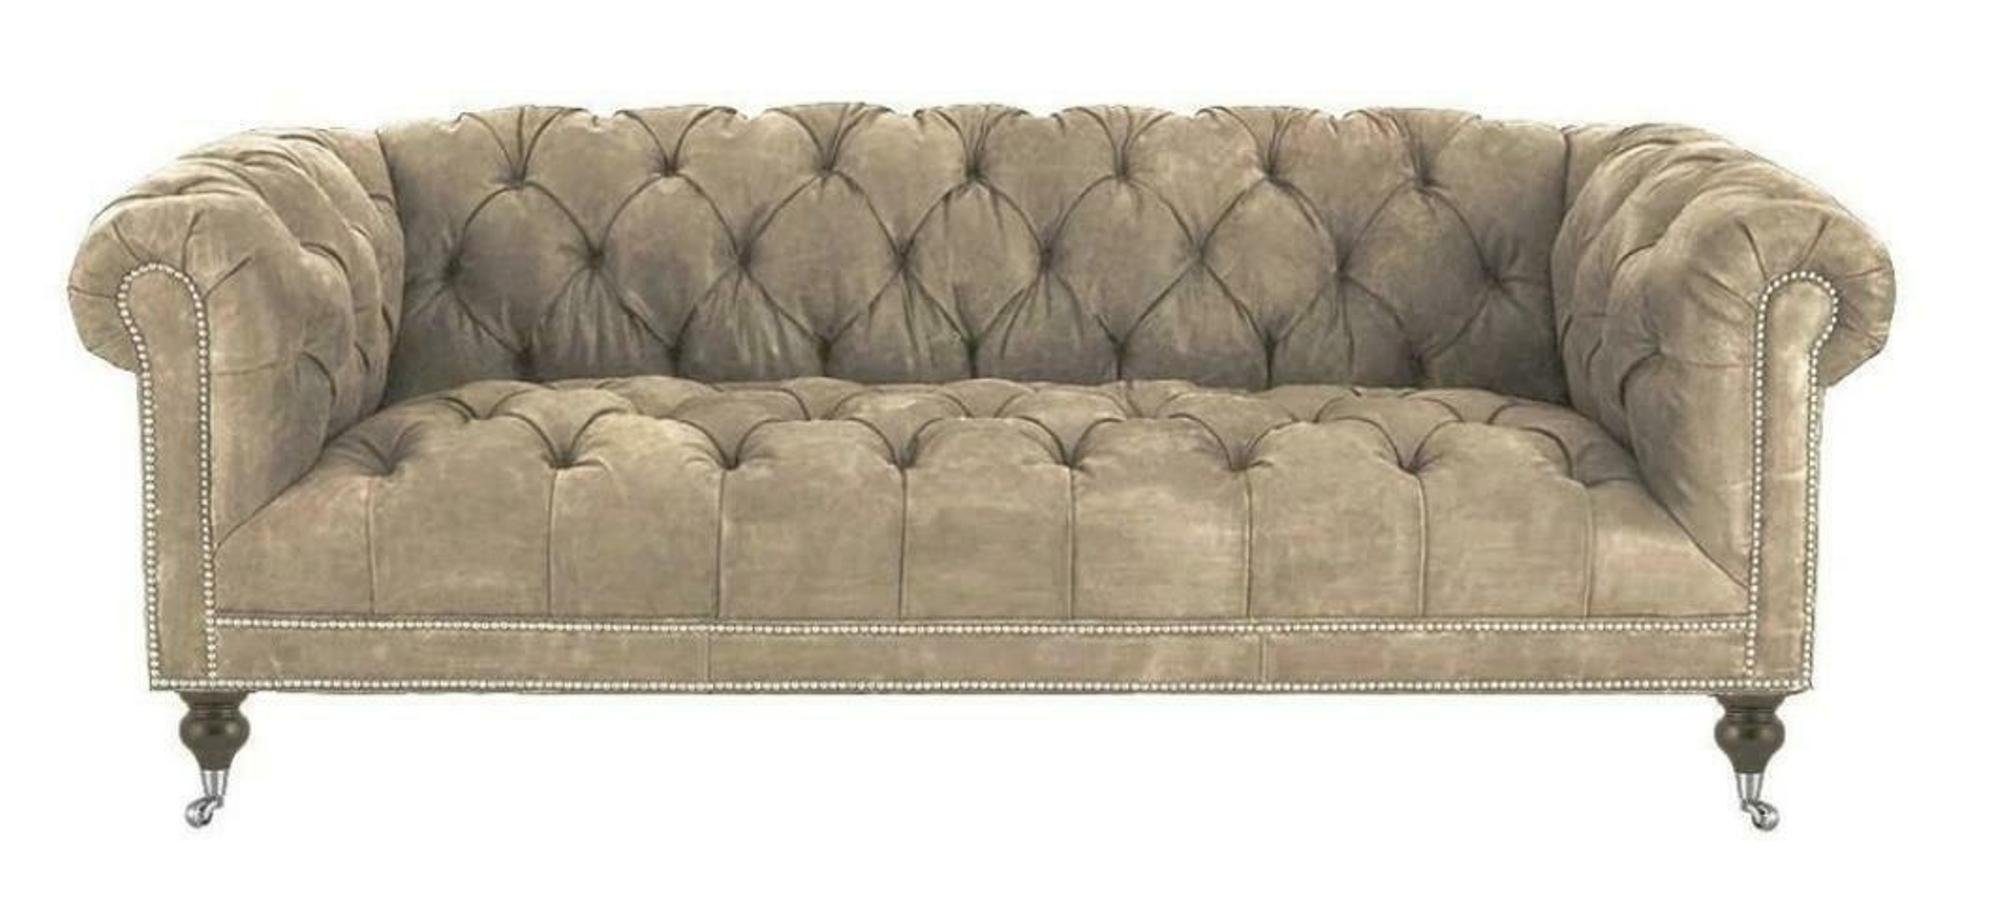 JVmoebel Chesterfield-Sofa, Braun Dreisitzer Chesterfield Modern Design Leder Sofa Design Möbel Weiß